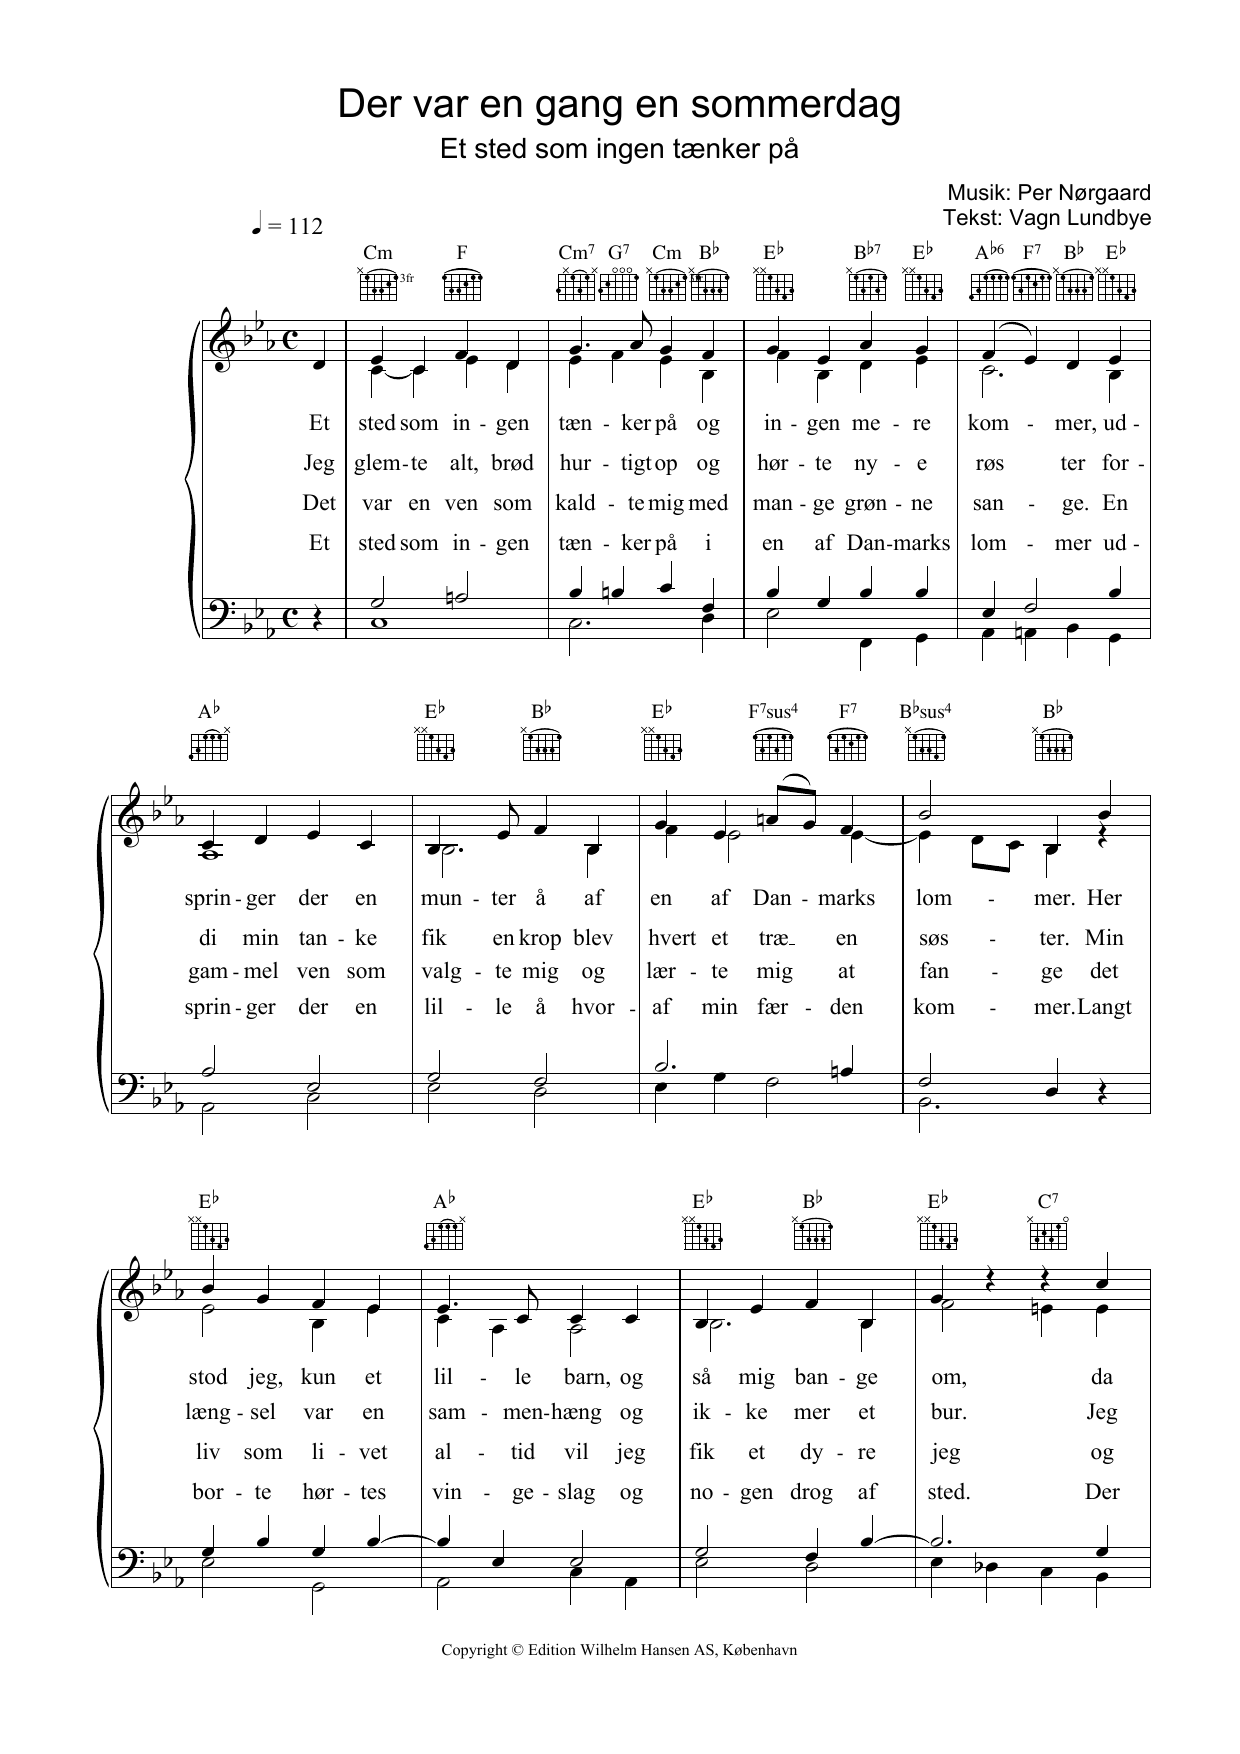 Per Nørgaard Der Var En Gang En Sommerdag Sheet Music Notes & Chords for Piano, Vocal & Guitar (Right-Hand Melody) - Download or Print PDF